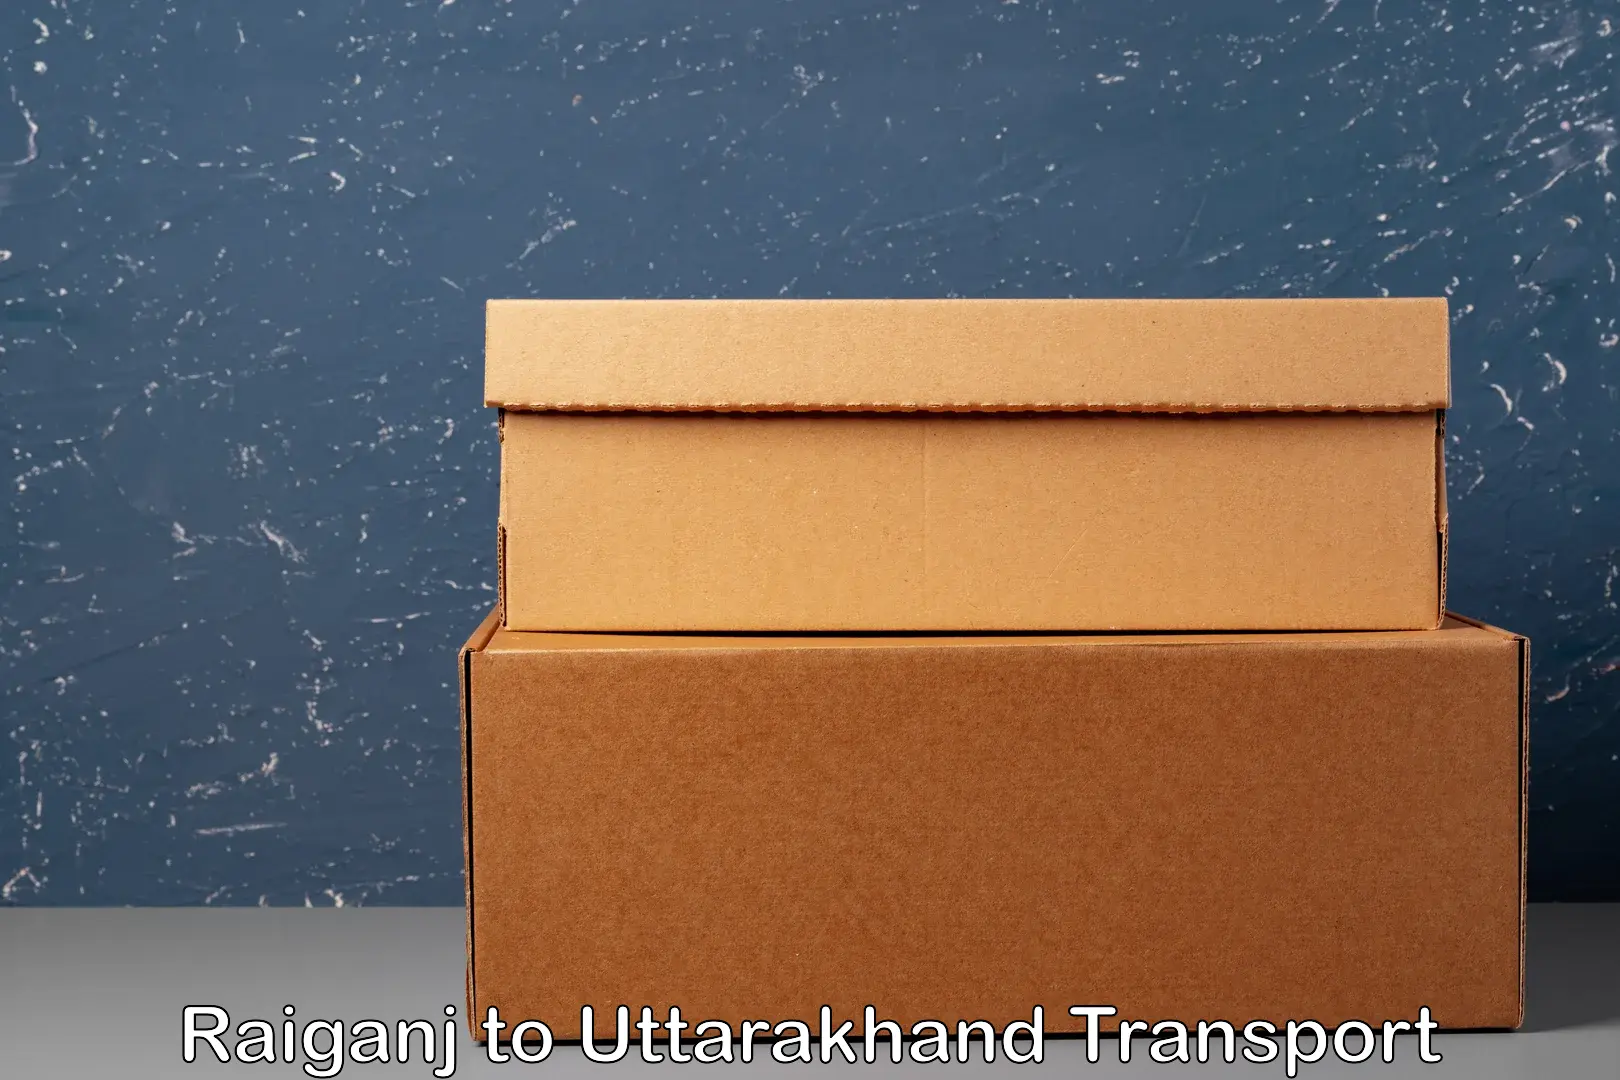 Vehicle parcel service Raiganj to Uttarakhand